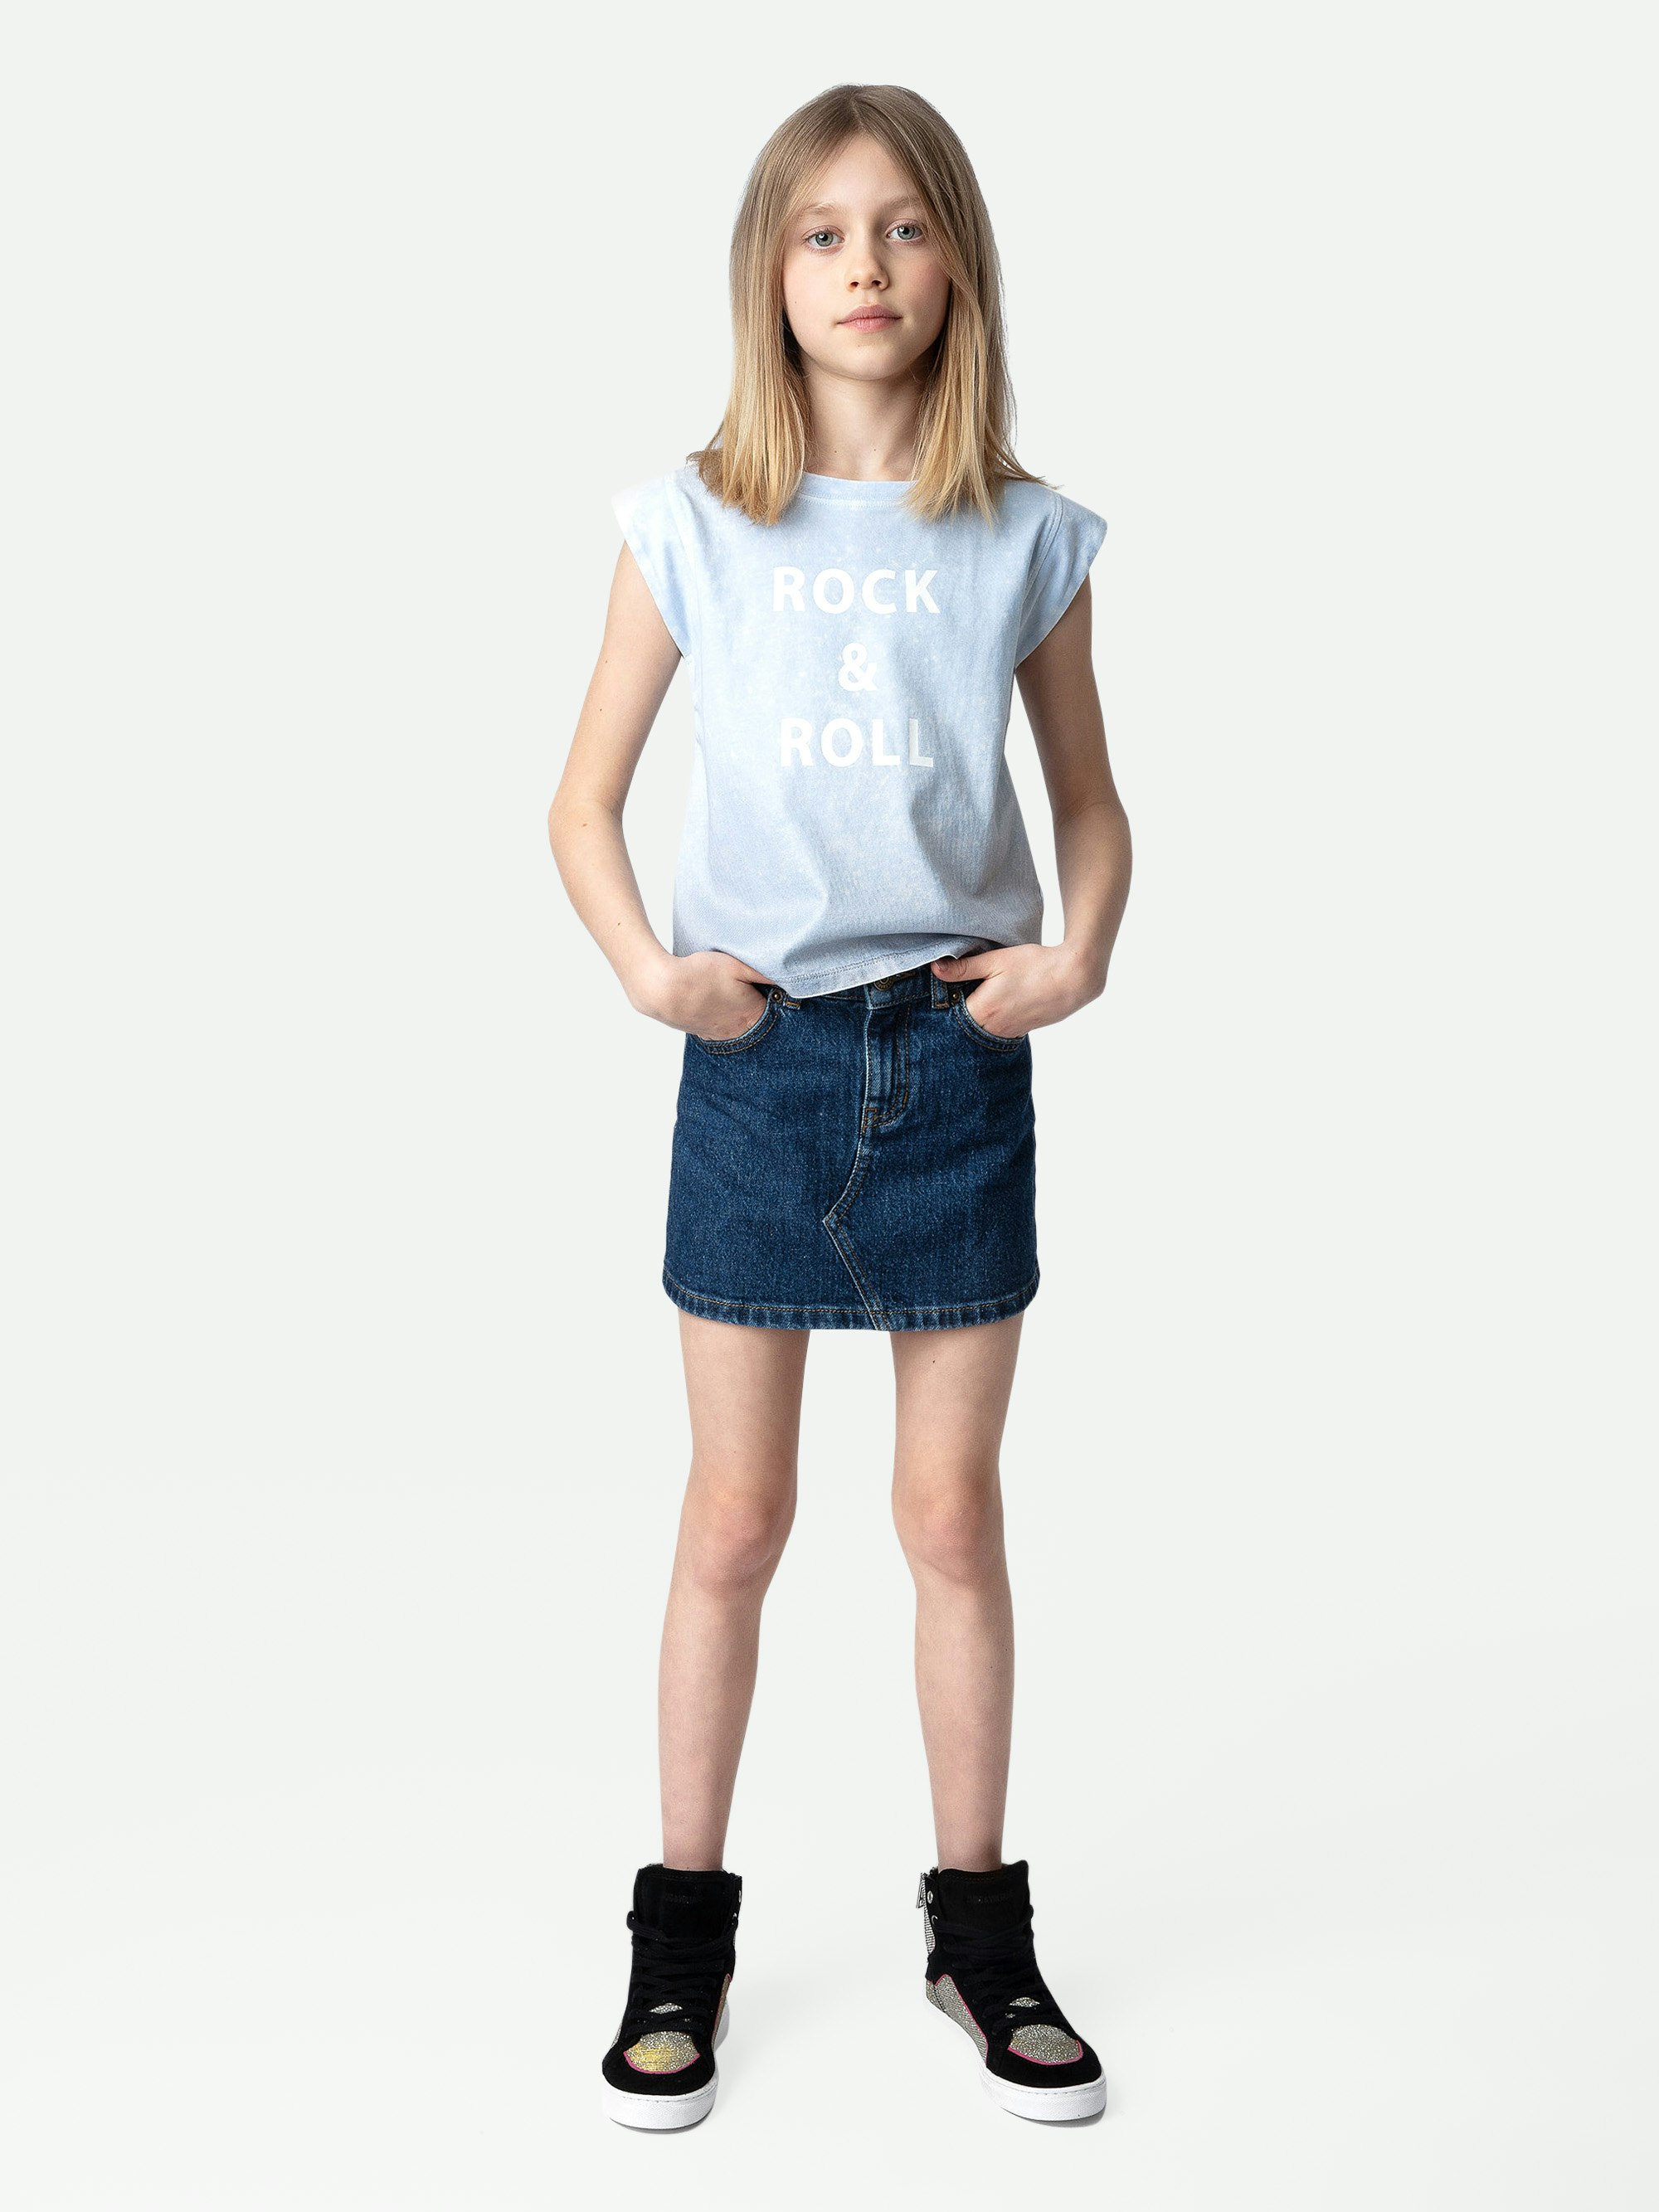 Alin Girls’ T-shirt - Girls’ short-sleeved T-shirt with “Rock & Roll” slogan.